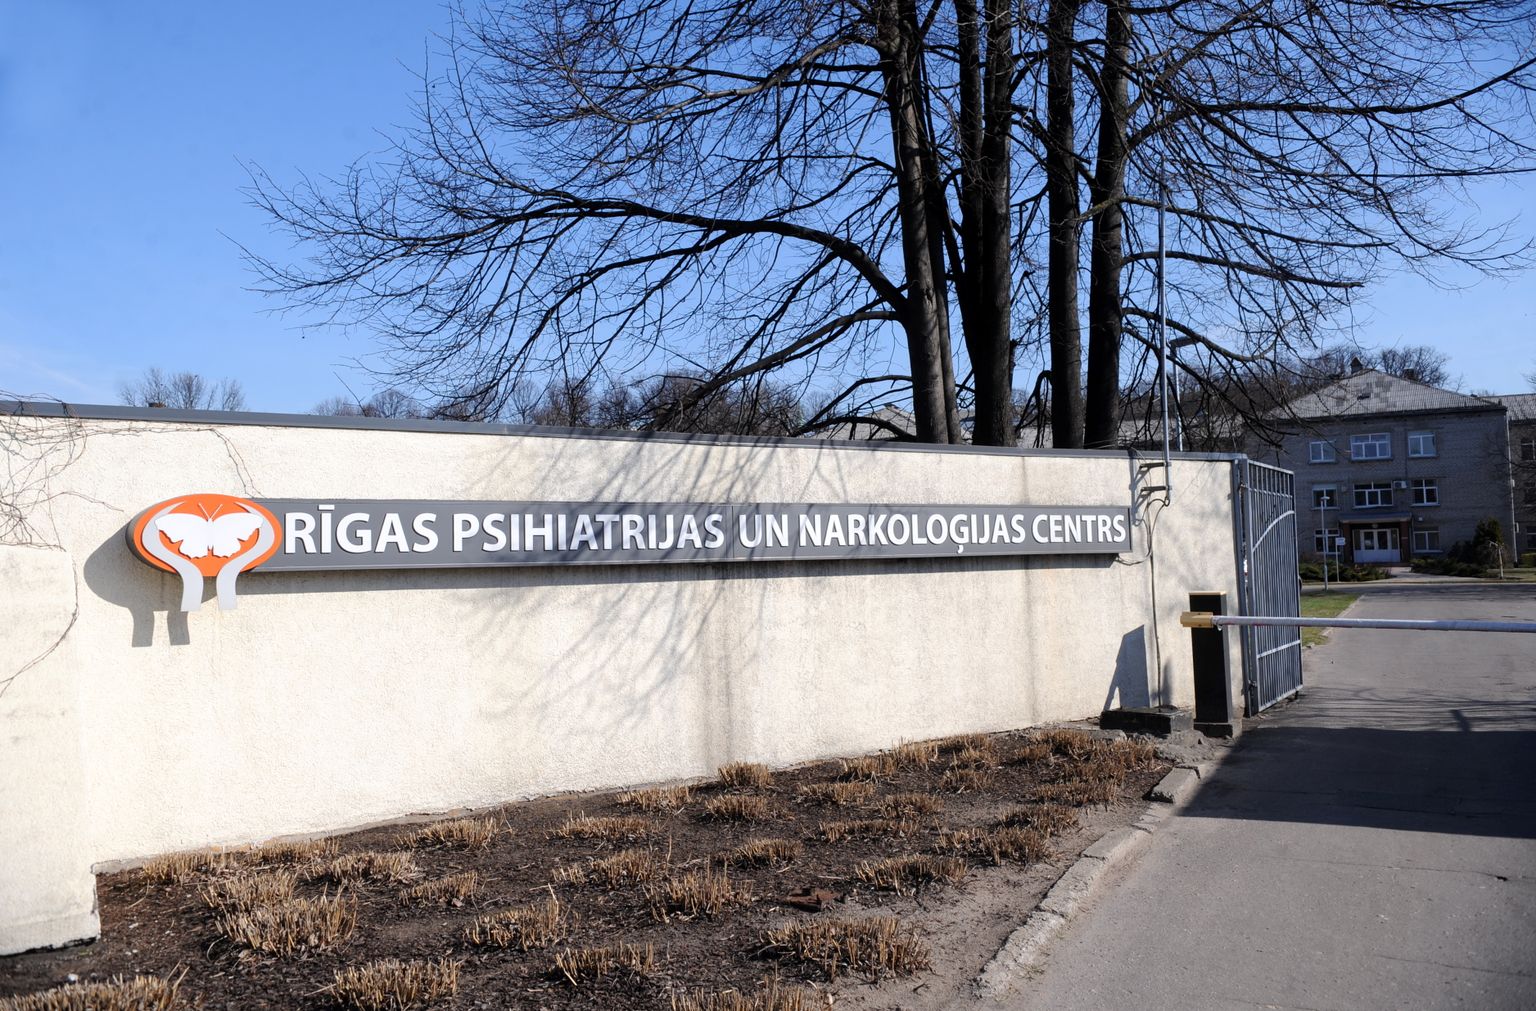 Рижский центр психиатрии и наркологии (RPNC)